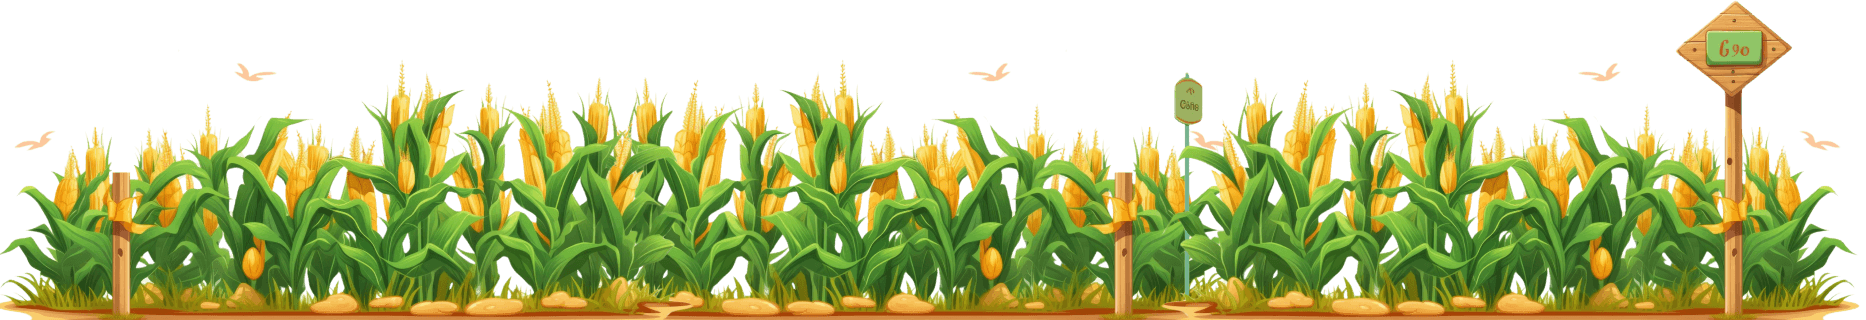 corn-farm